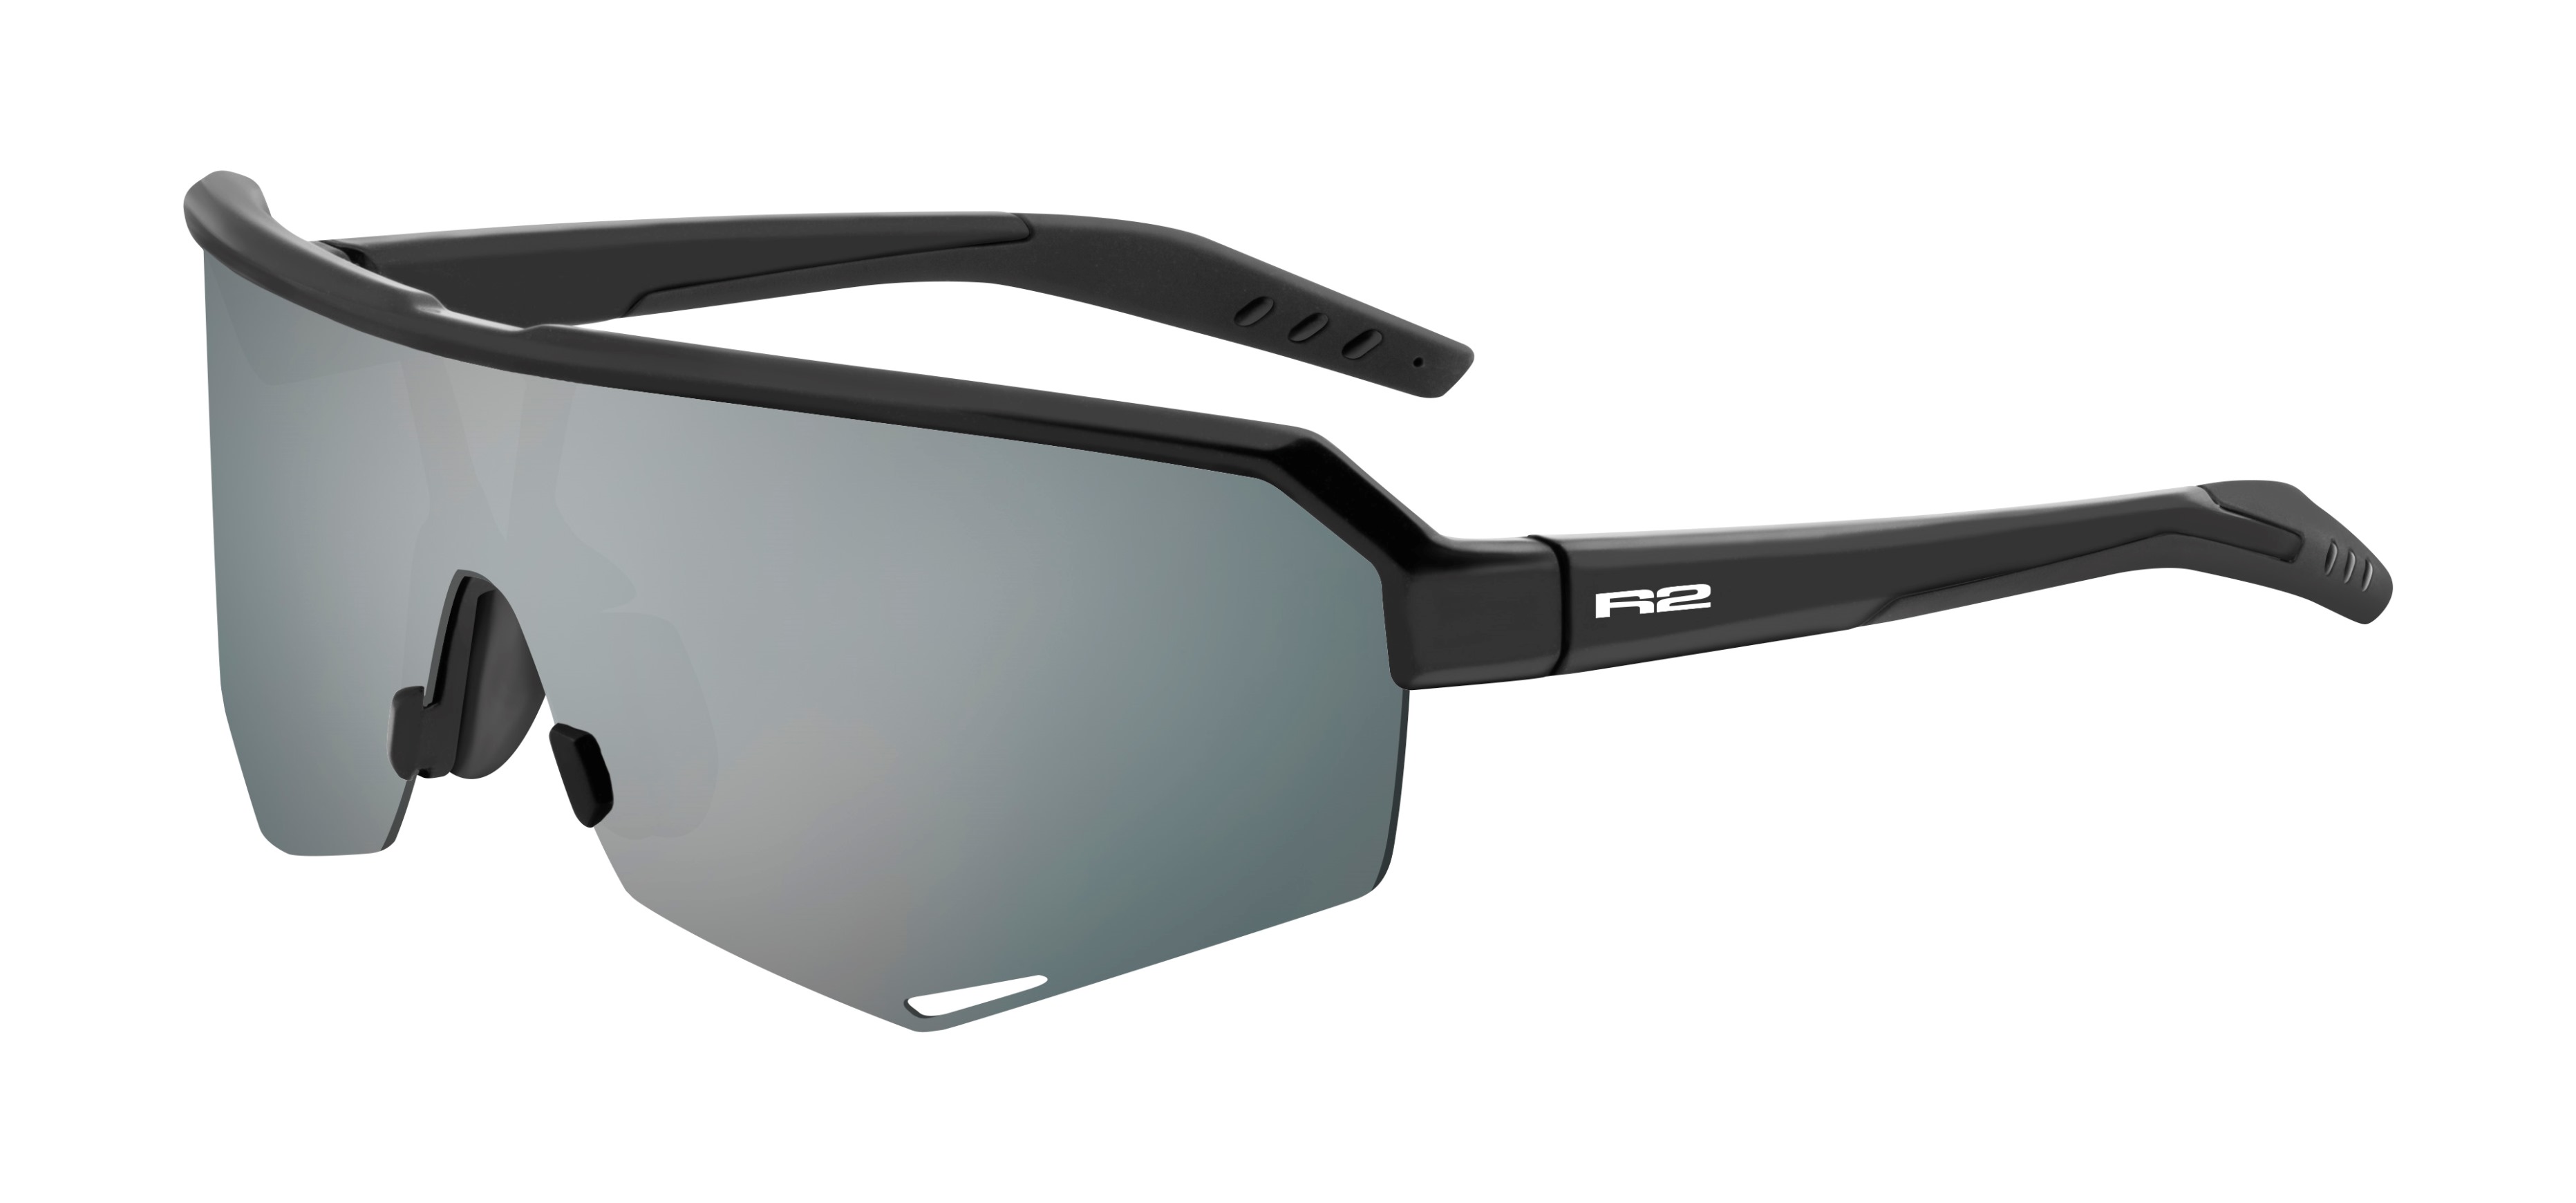 Sport sunglasses R2 FLUKE AT100E standard